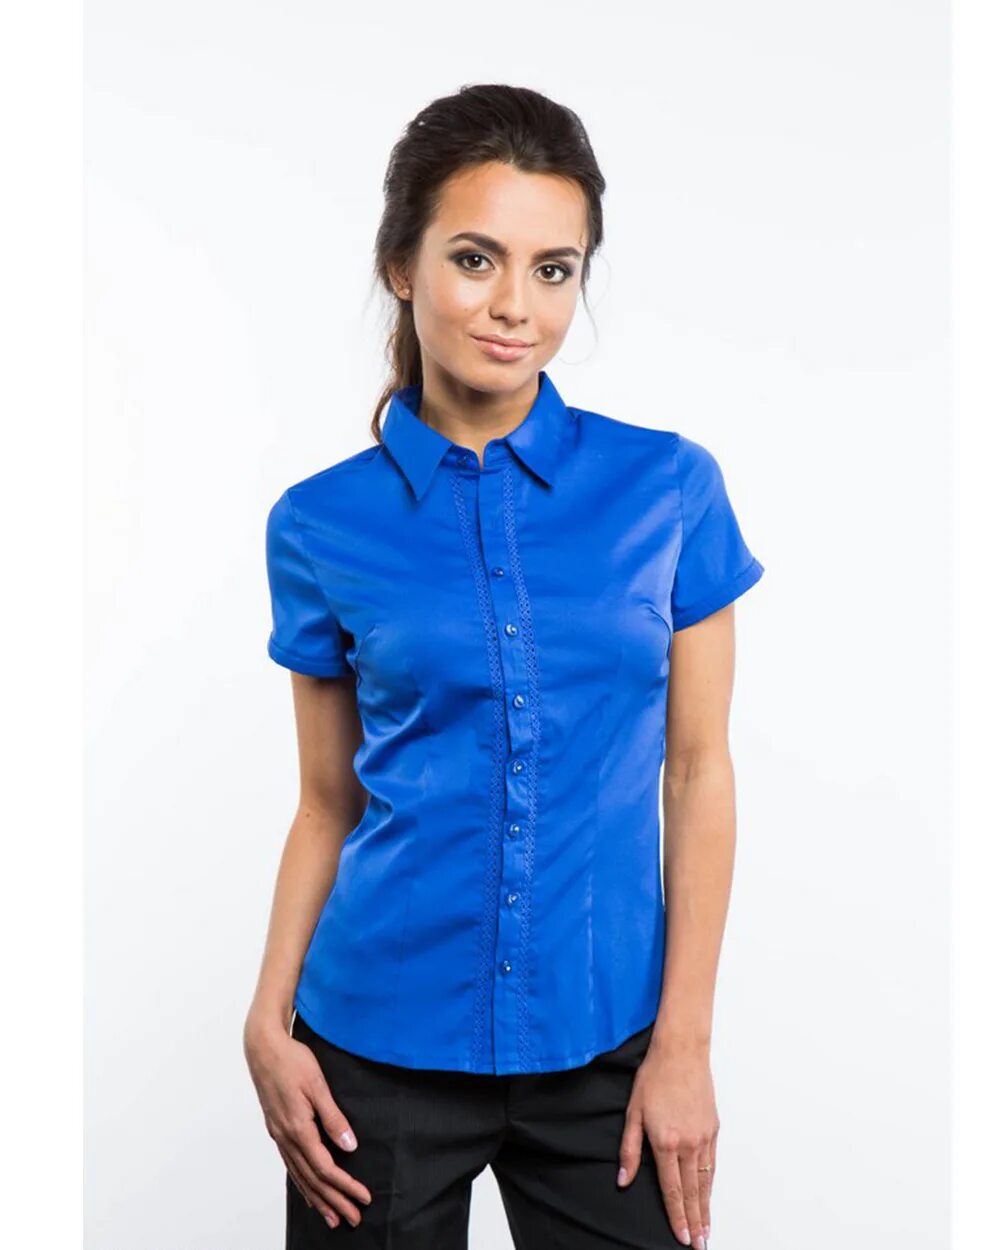 Синяя рубашка женская. Блузка с коротким рукавом. Блузка женская с коротким рукавом. Рубашка с коротким рукавом женская. Блузка женская синяя